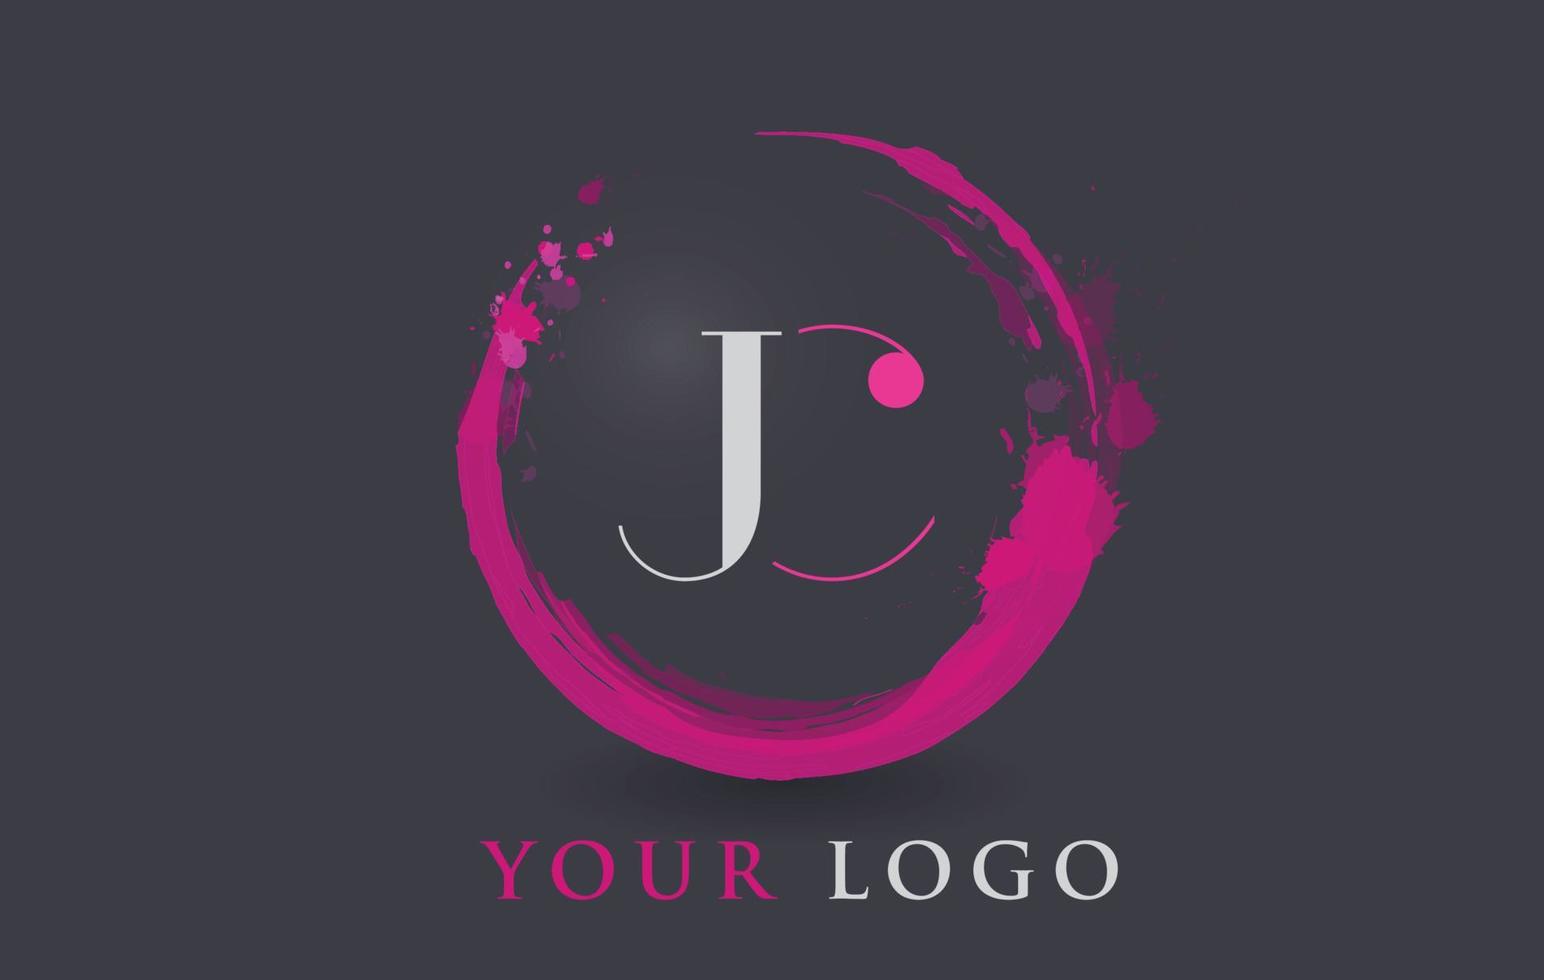 conceito de pincel de respingo roxo circular logotipo de carta jc. vetor